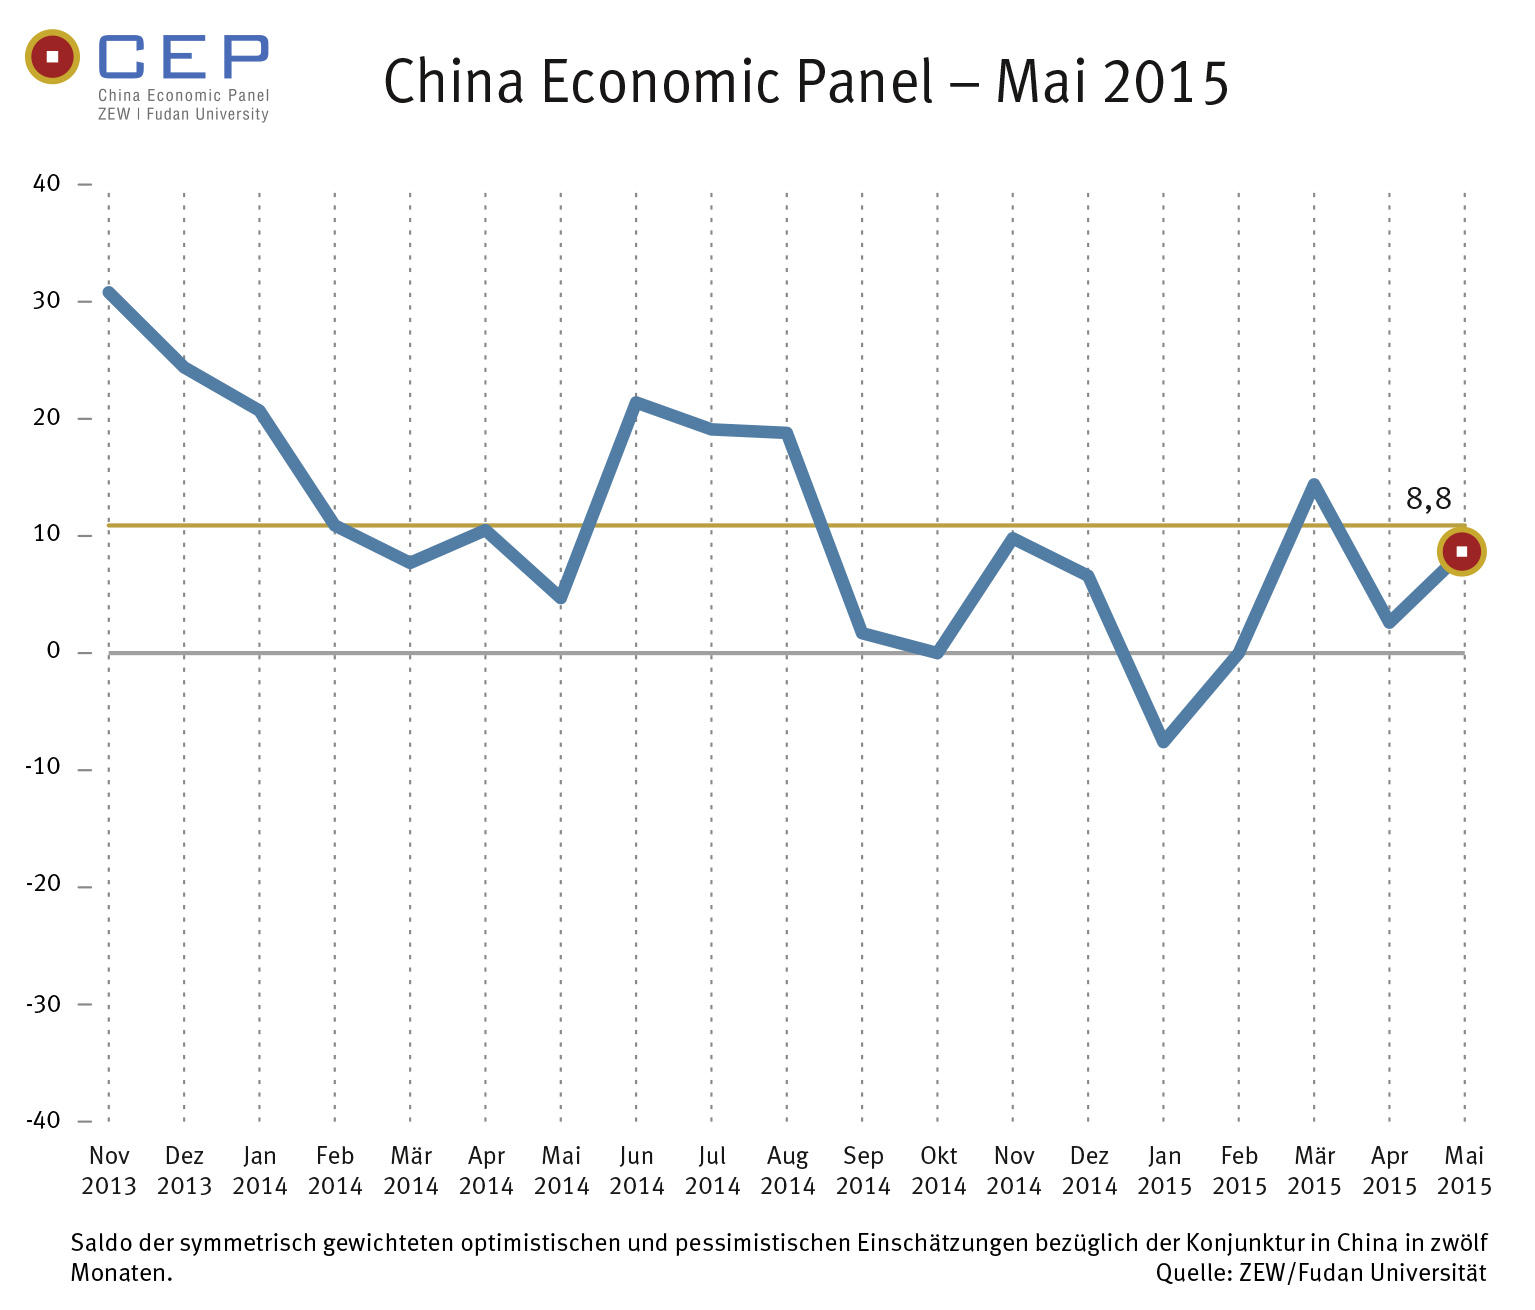 China Economic Panel (CEP) von ZEW und Fudan Universität (Shanghai)